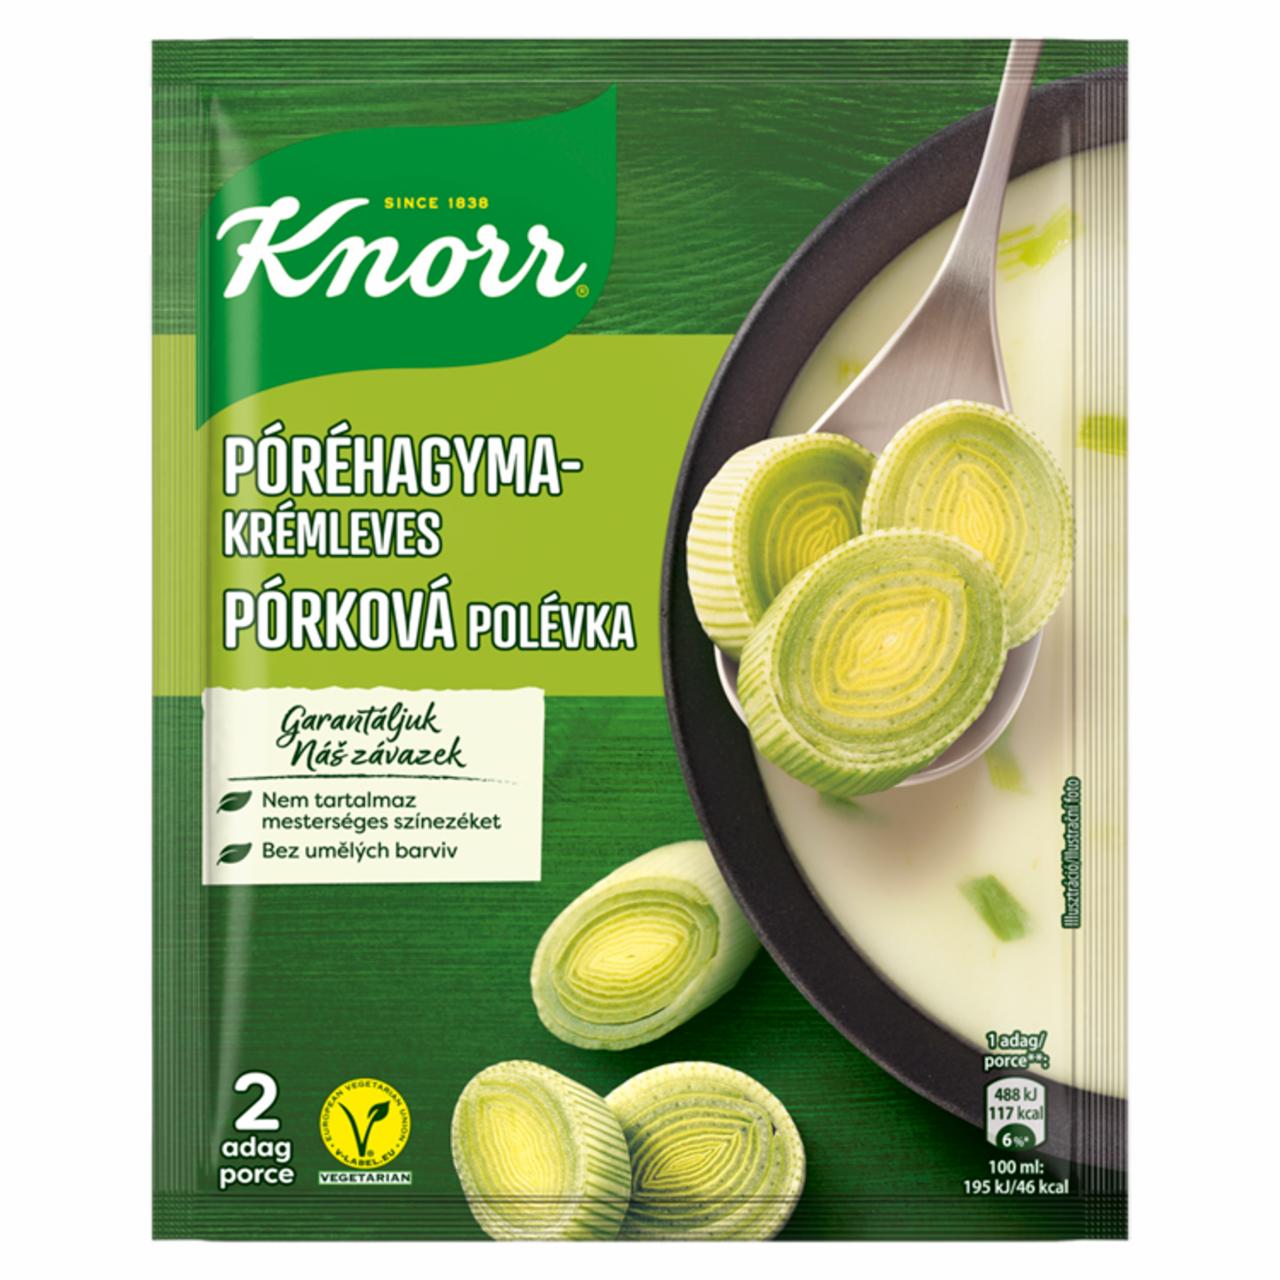 Képek - Knorr póréhagyma-krémleves 53 g